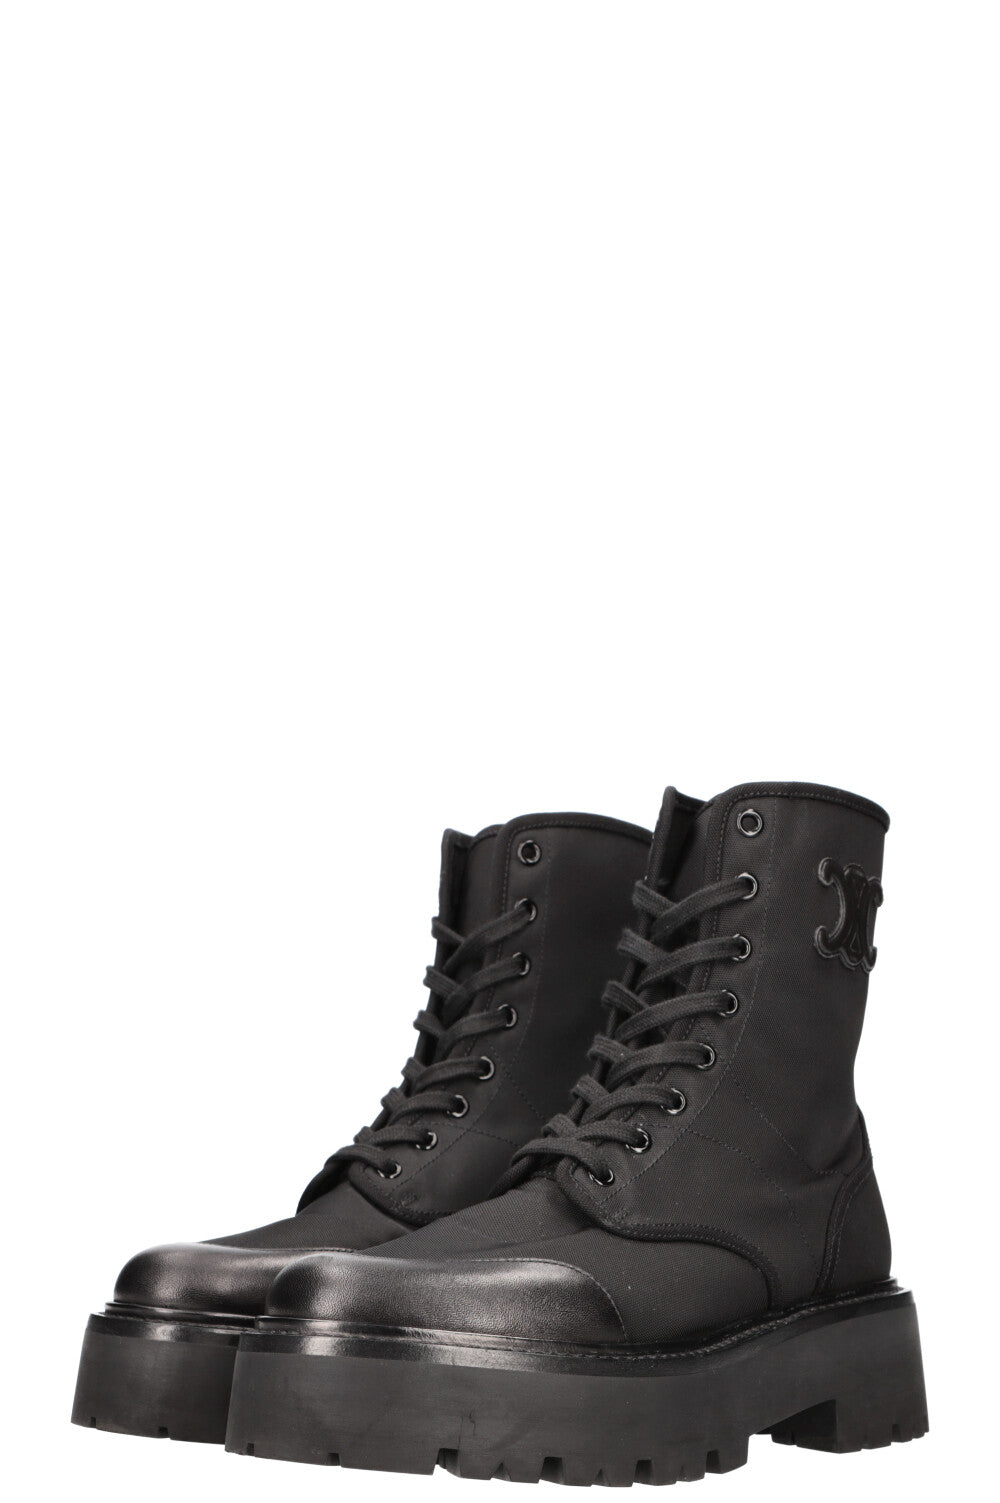 CELINE Boots Nylon Black